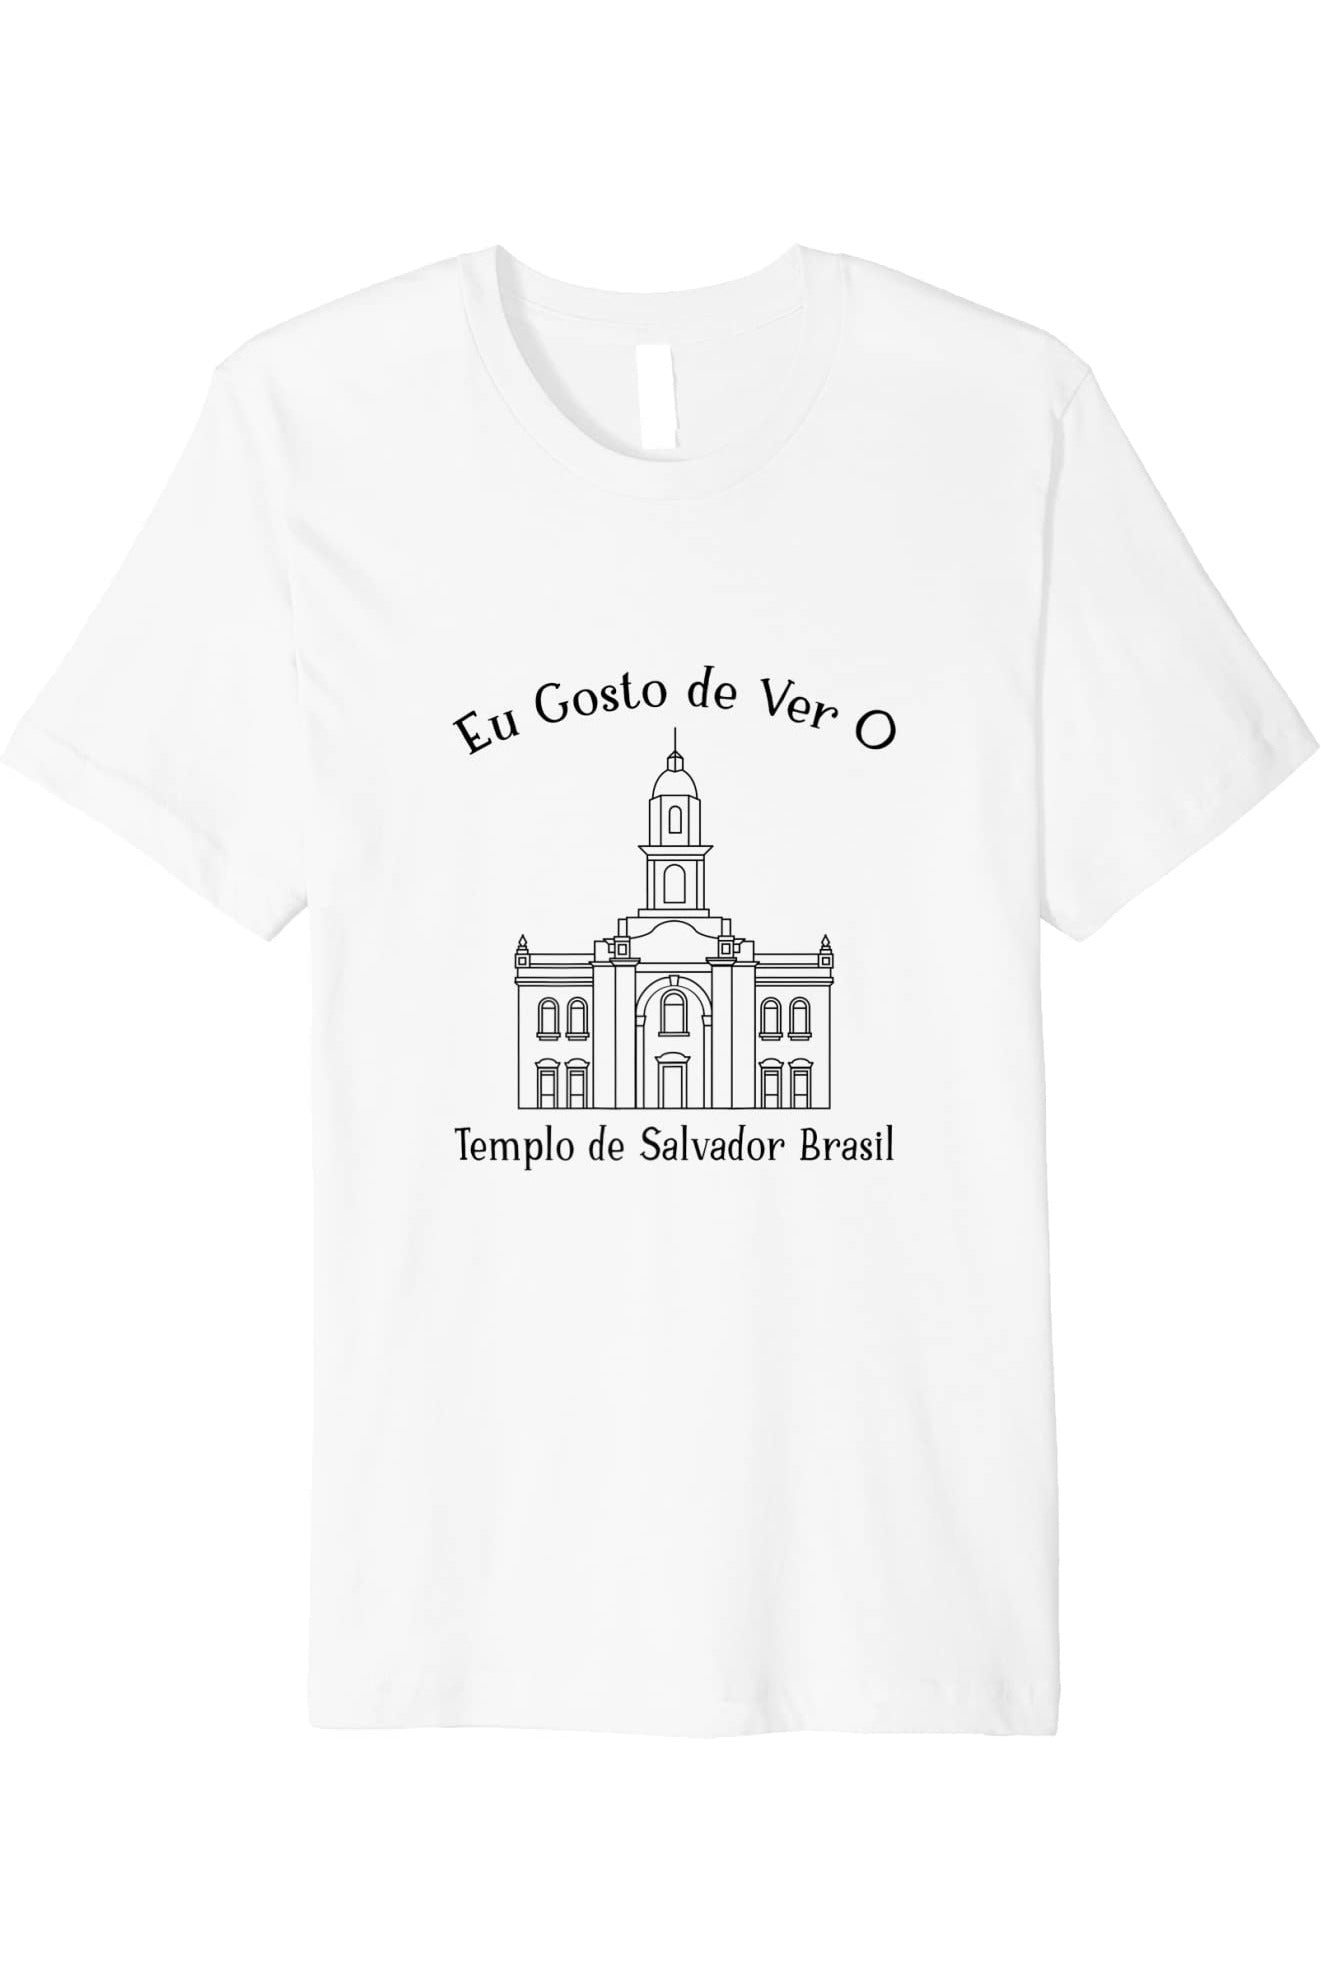 Salvador Brazil Temple T-Shirt - Premium - Happy Style (Portuguese) US